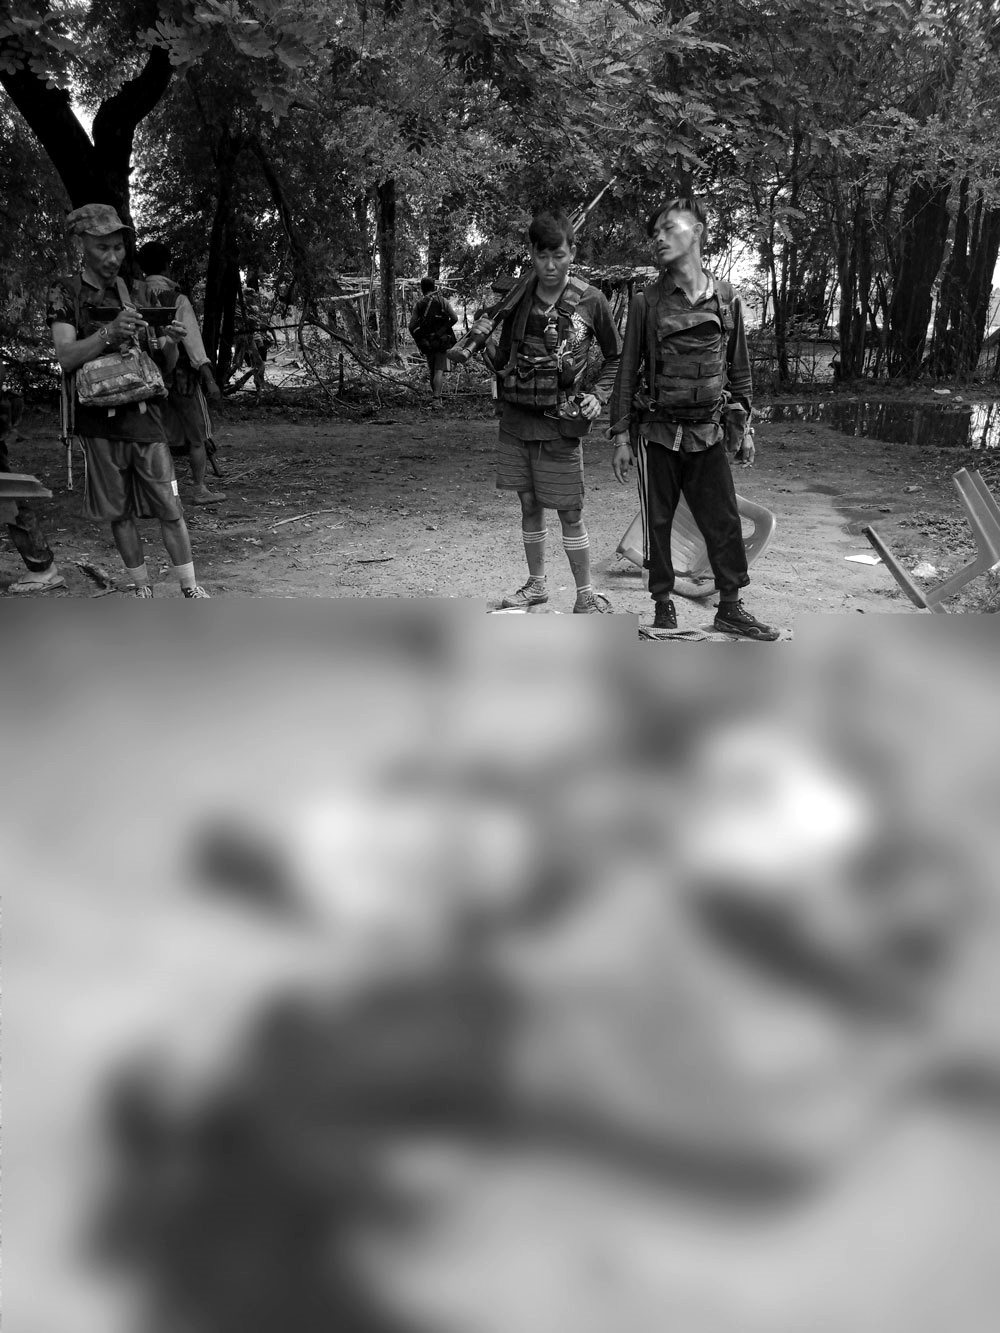 手機中揭露的緬甸軍人殘酷暴行。圖片已經過變色處理。 圖／截自《自由亞洲電台》